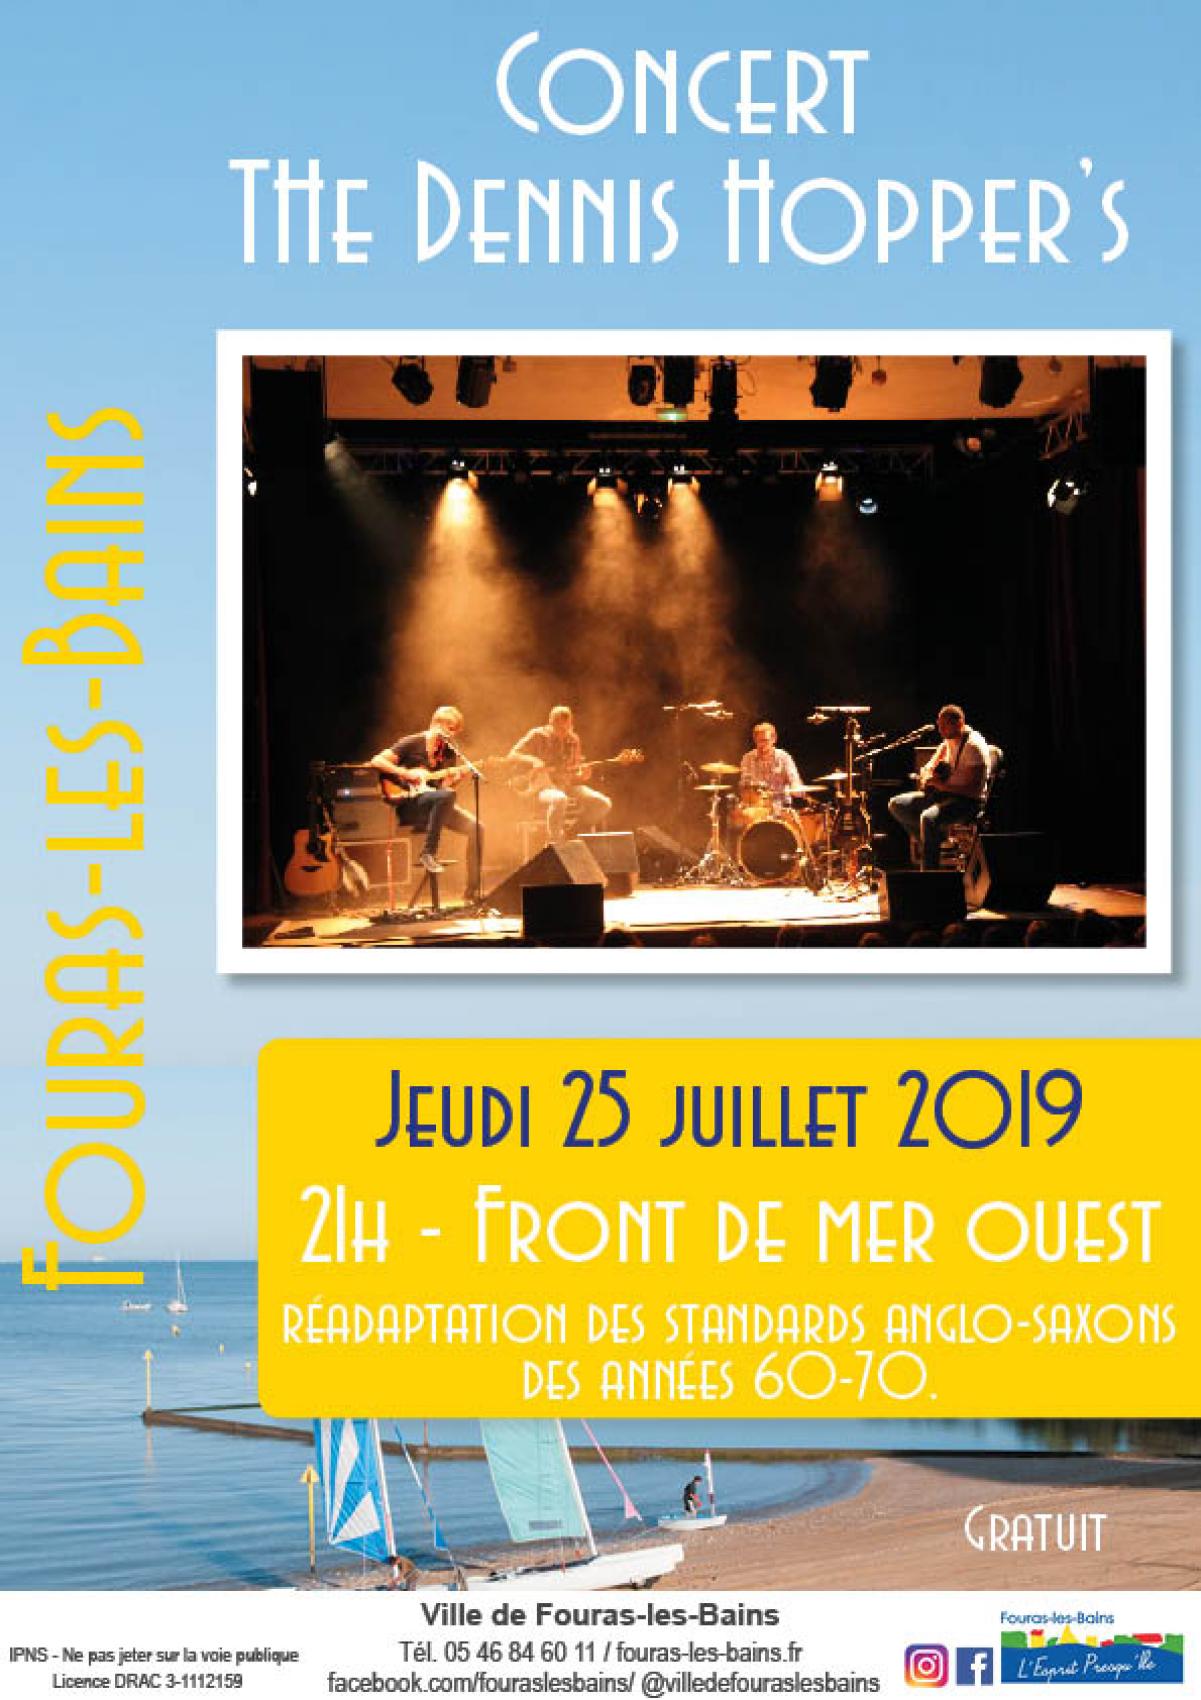 Concert de The Dennis Hopper's - Jeudi 25 juillet 2019 - 21h Front de mer ouest